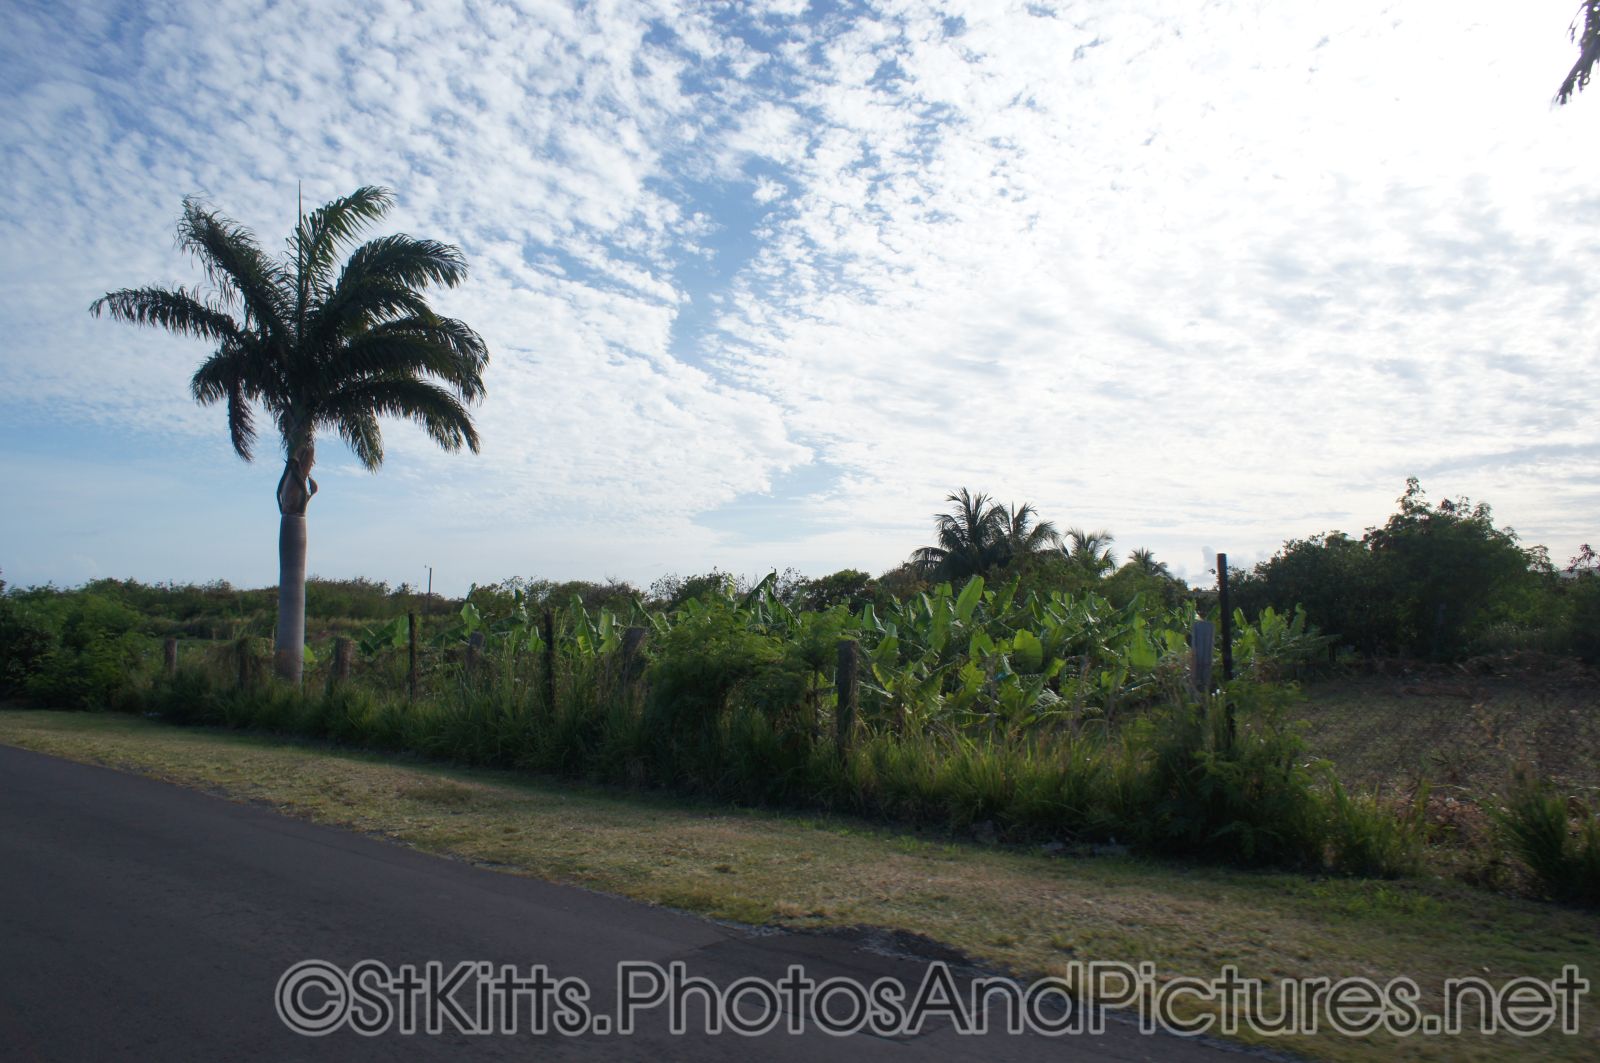 Palm trees in St Kitts.jpg
